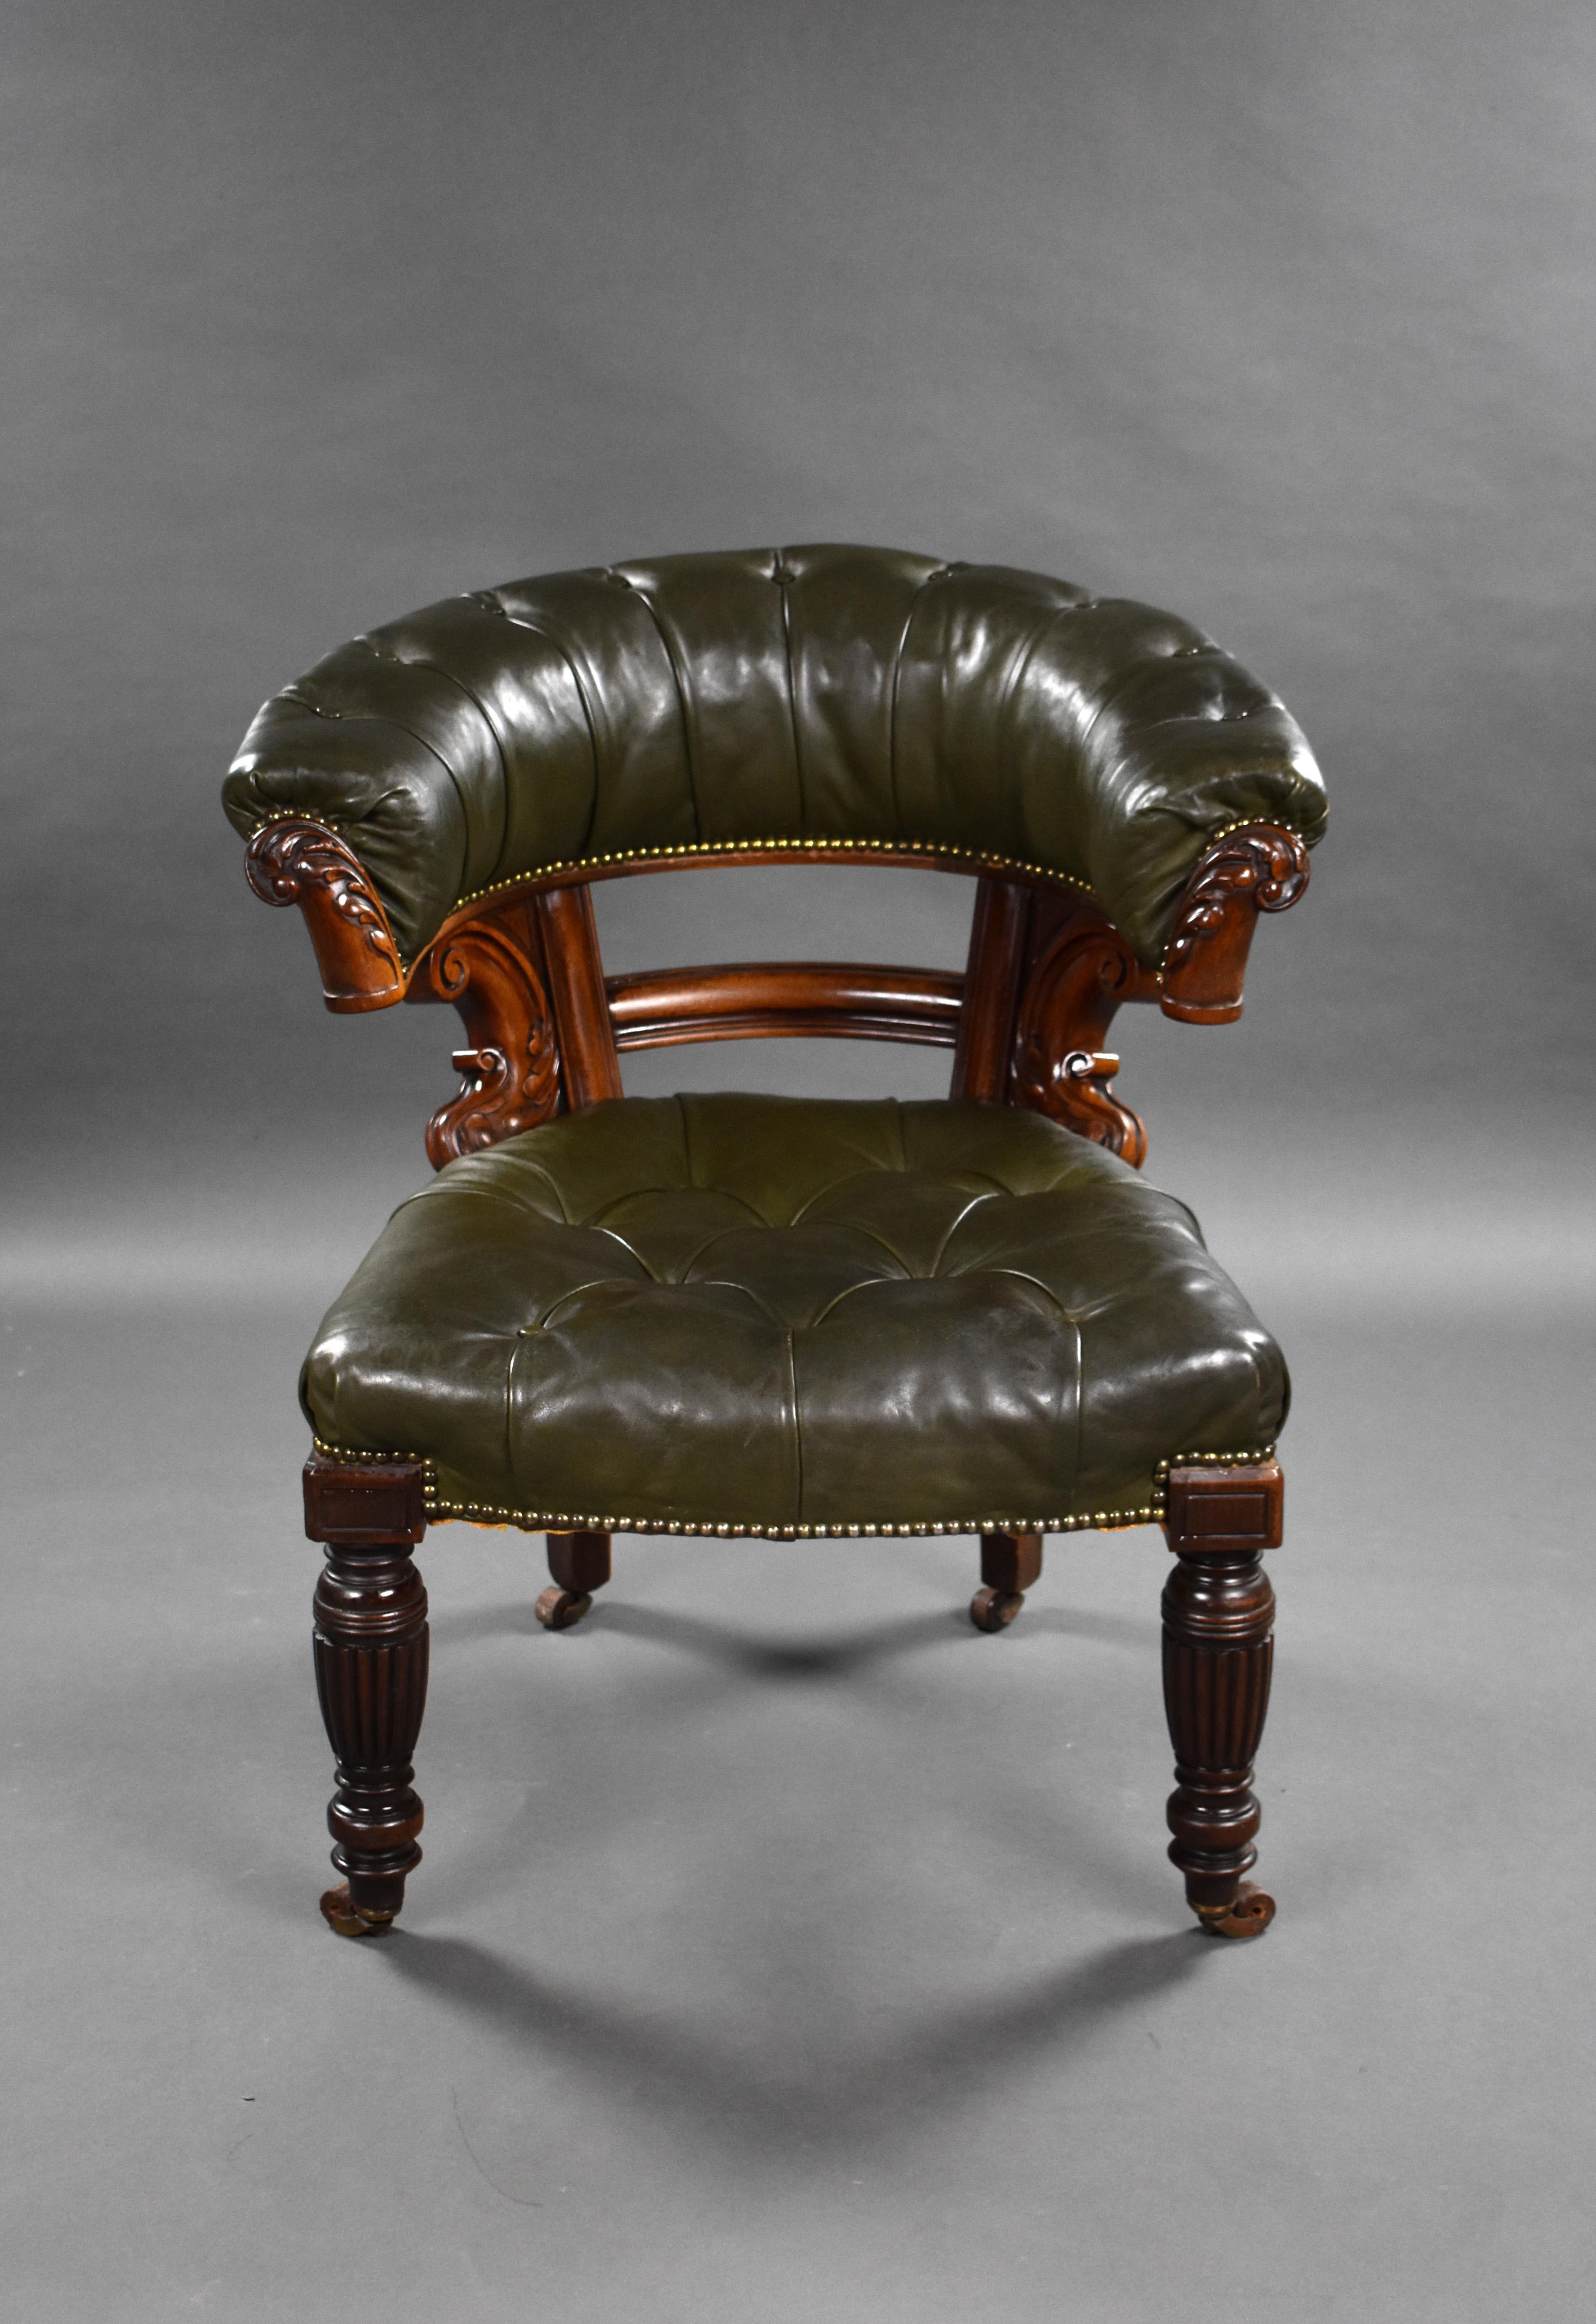 Zum Verkauf steht ein hochwertiger viktorianischer Ledersessel in der Art von Gillows, mit einer hufeisenförmigen Rückenlehne auf geschnitzten Stützen und geriffelten, gedrechselten Beinen, die auf Rollen enden. Die Stühle befinden sich in einem